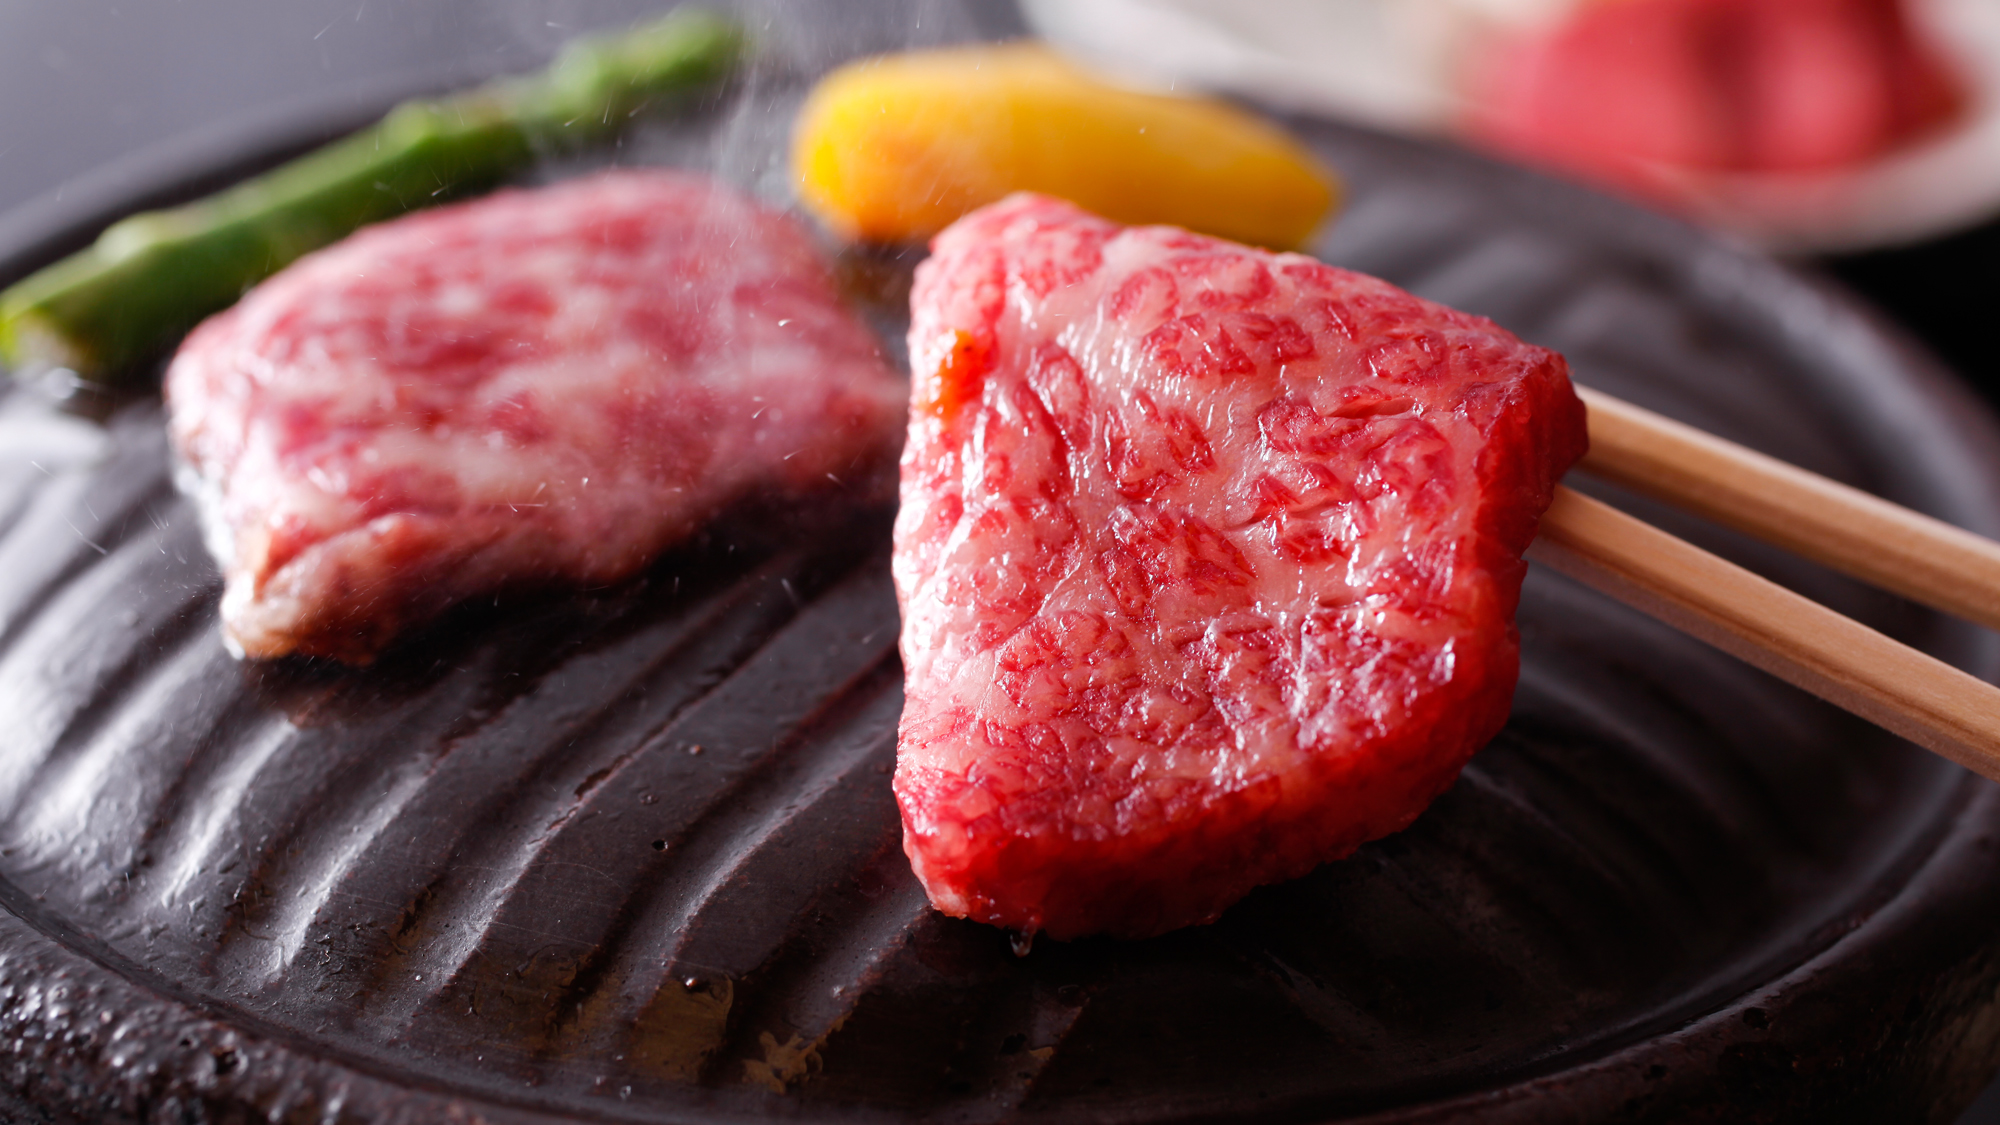 【淡路牛の石焼ステーキ】 霜降りの牛肉をアツアツに熱した石の上でジュワっとお好みの焼き加減で